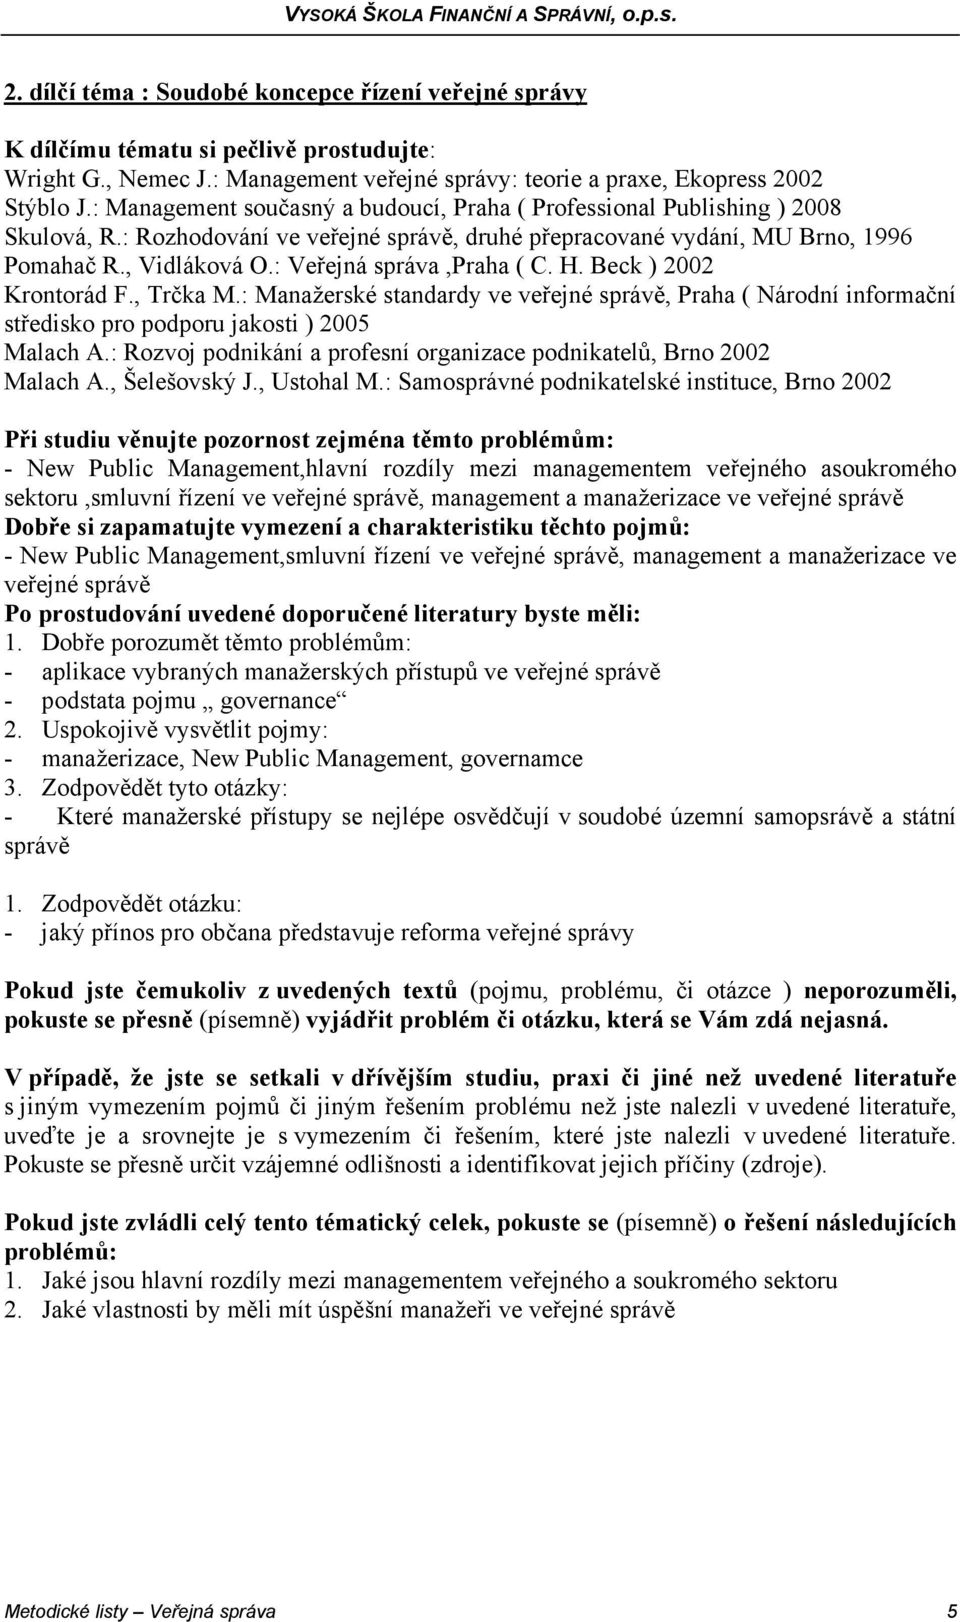 : Veřejná správa,praha ( C. H. Beck ) 2002 Krontorád F., Trčka M.: Manažerské standardy ve veřejné správě, Praha ( Národní informační středisko pro podporu jakosti ) 2005 Malach A.